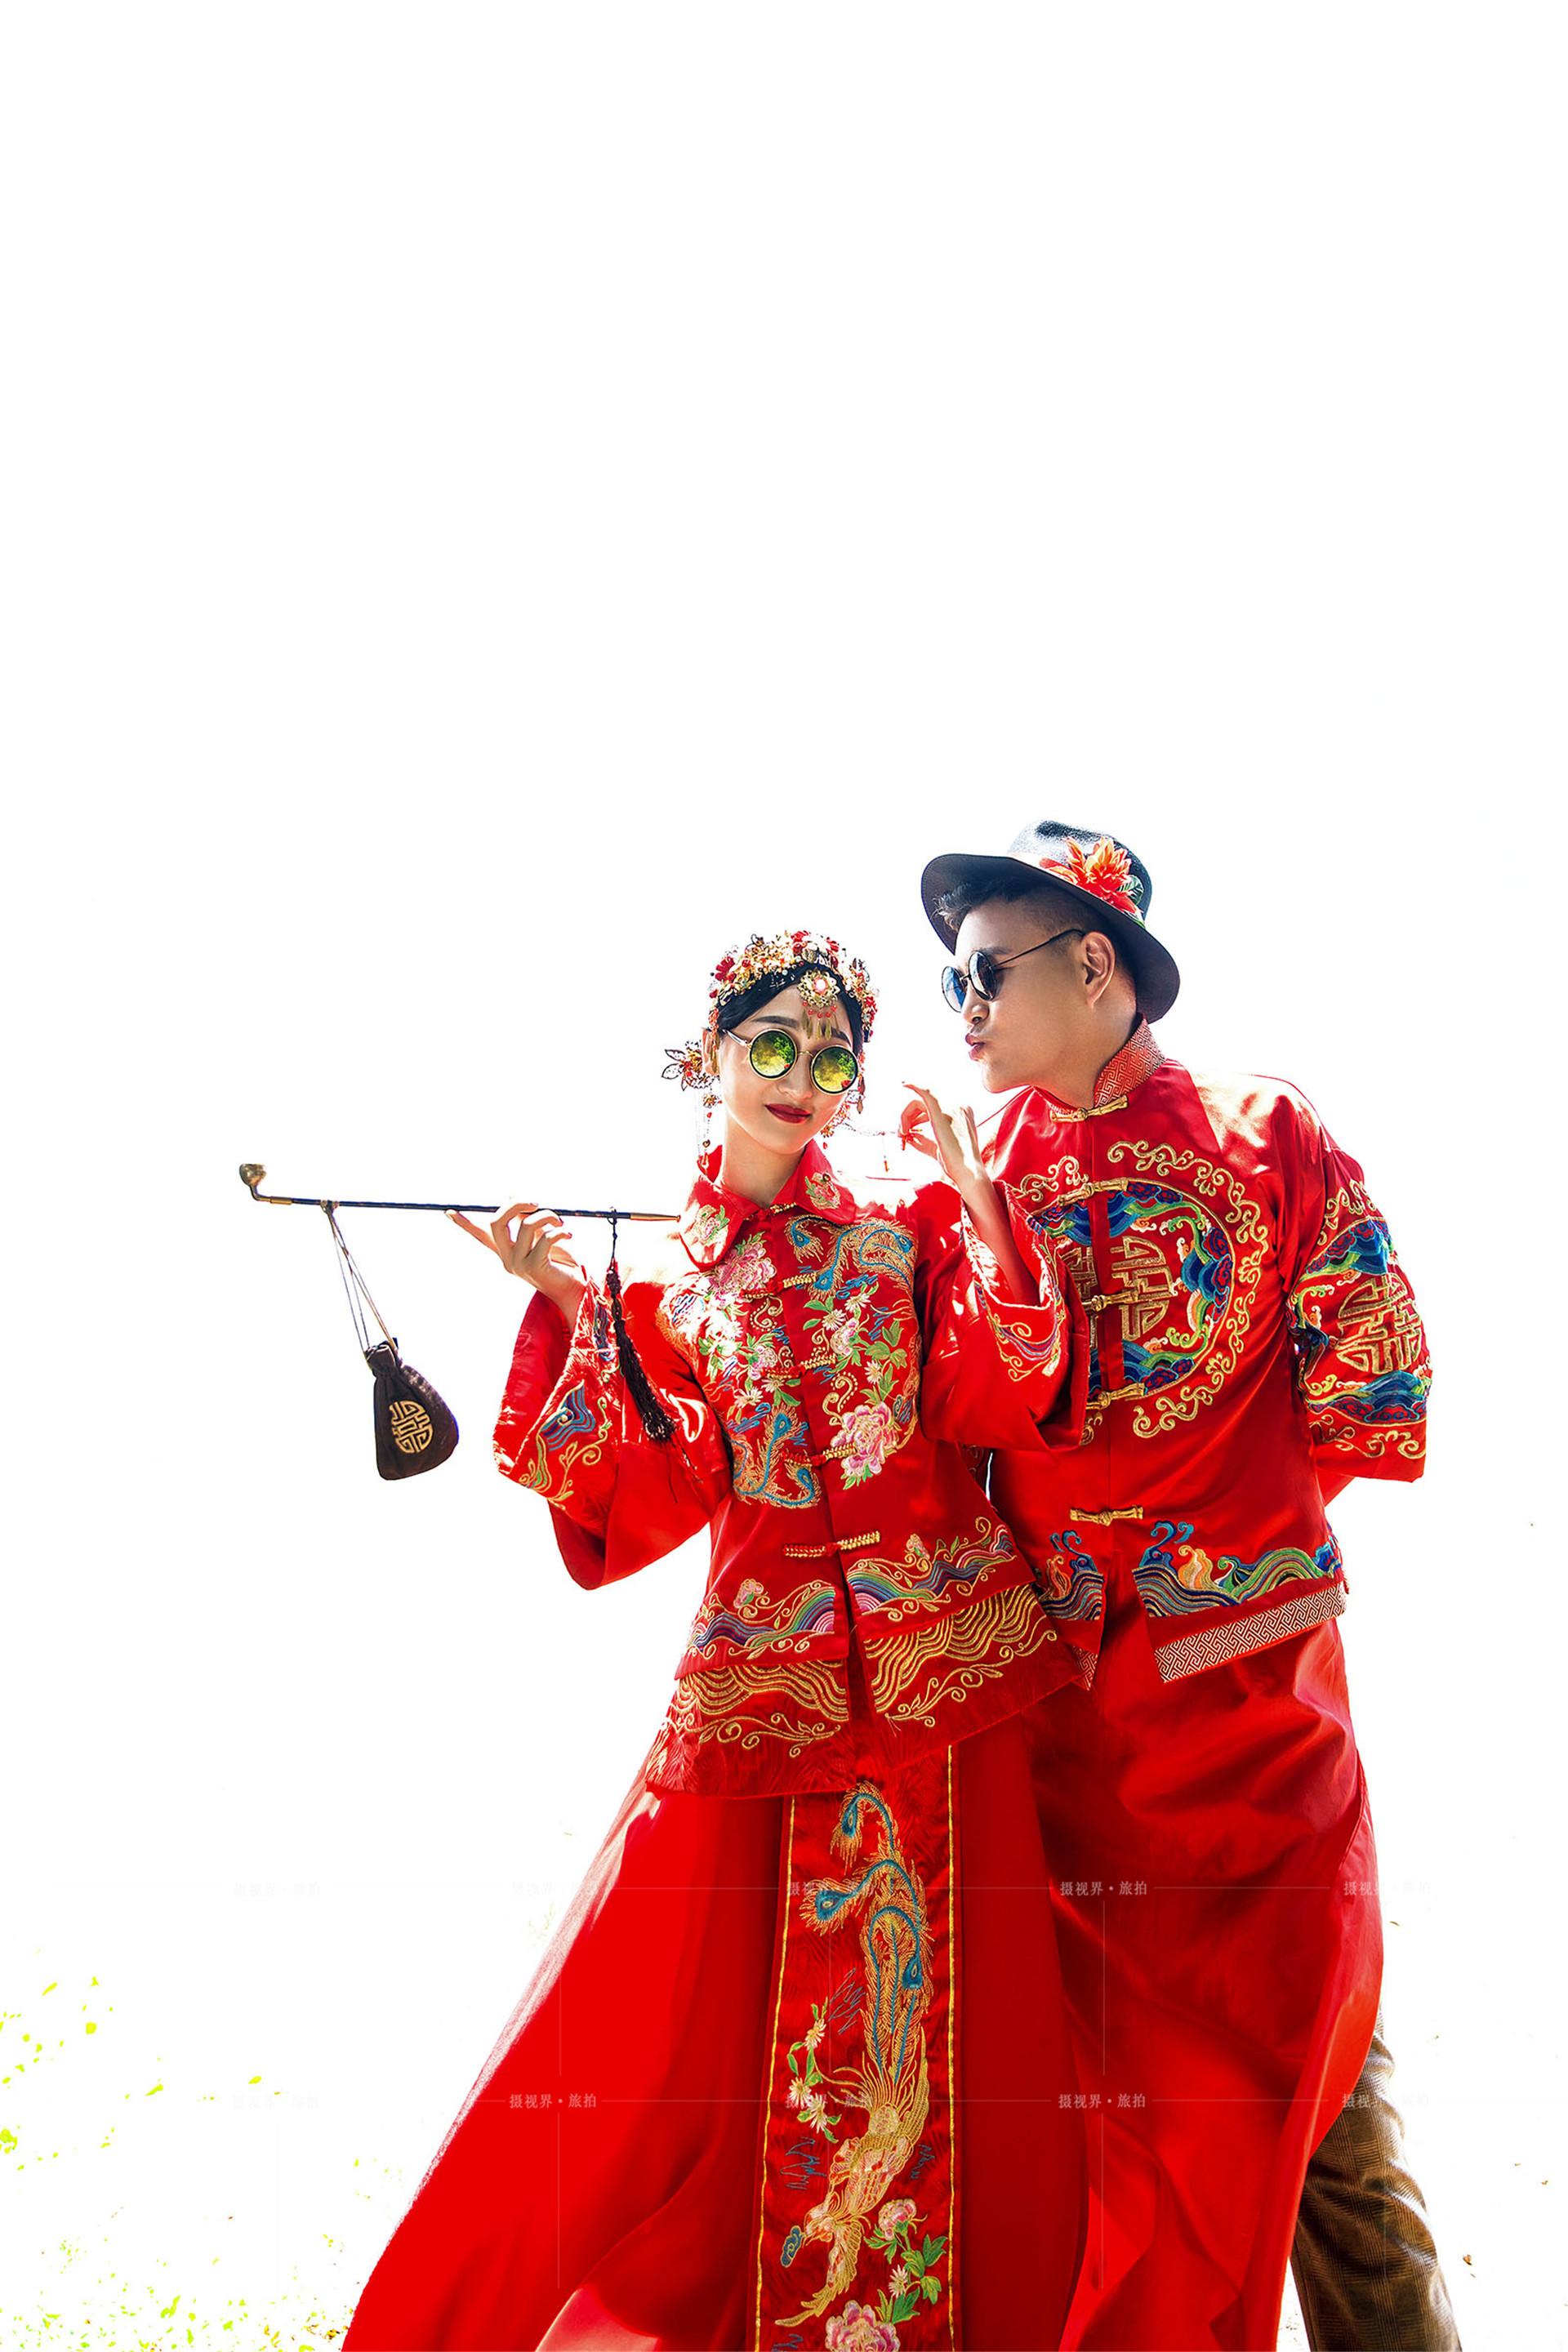 短发新娘在杭州拍摄秀禾服婚纱照一定要注意的事项,让婚纱摄影更有